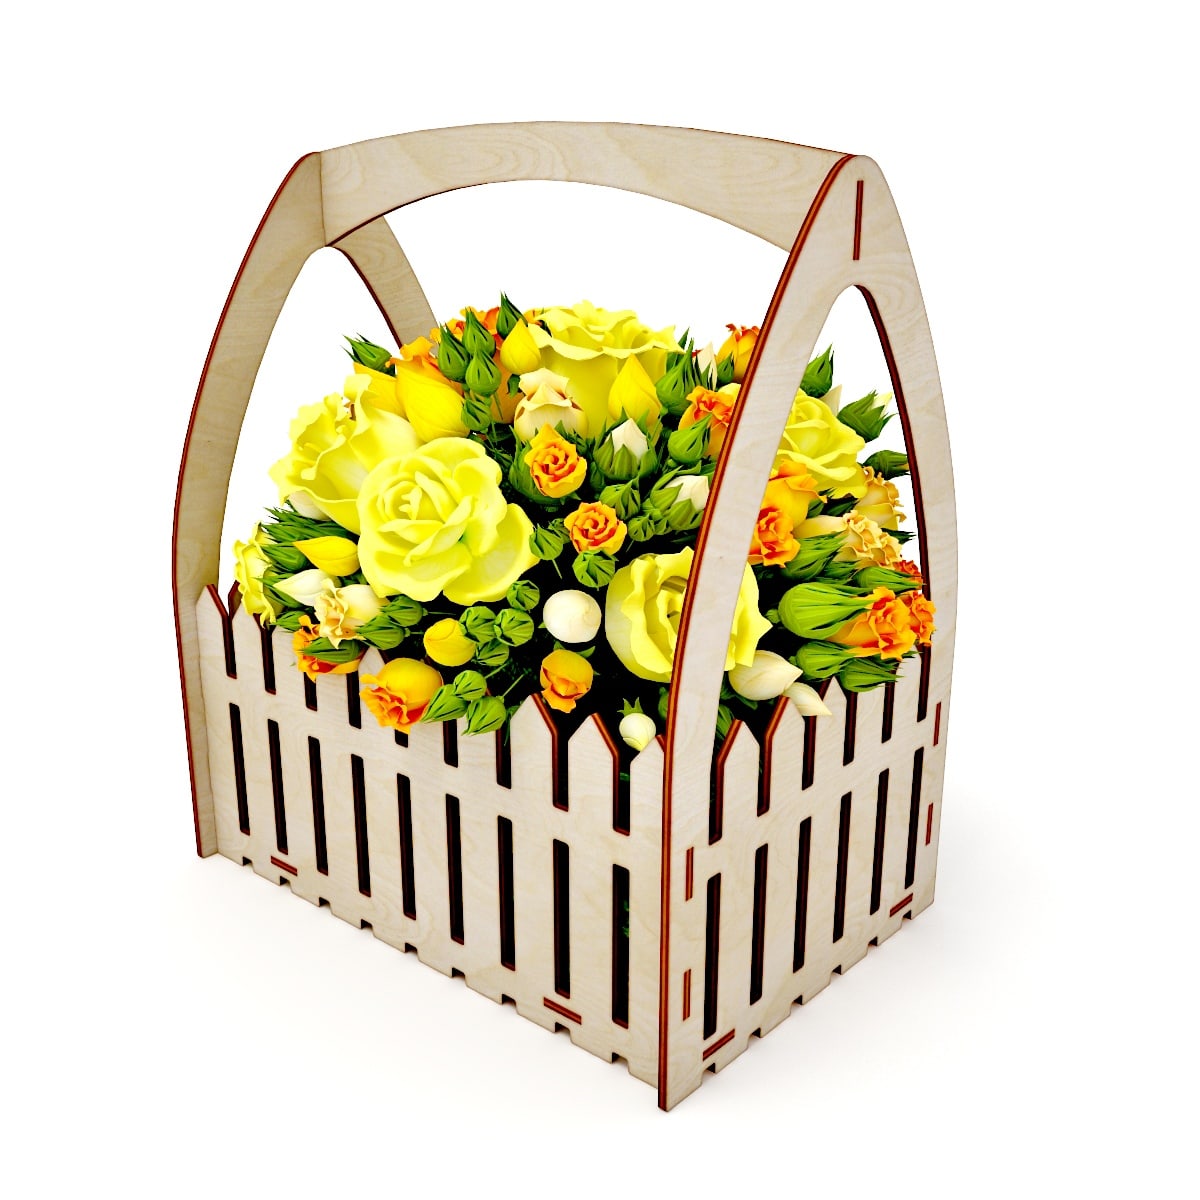 Download Laser Cut Wooden Fence Flower Basket Free Vector - Designs ...